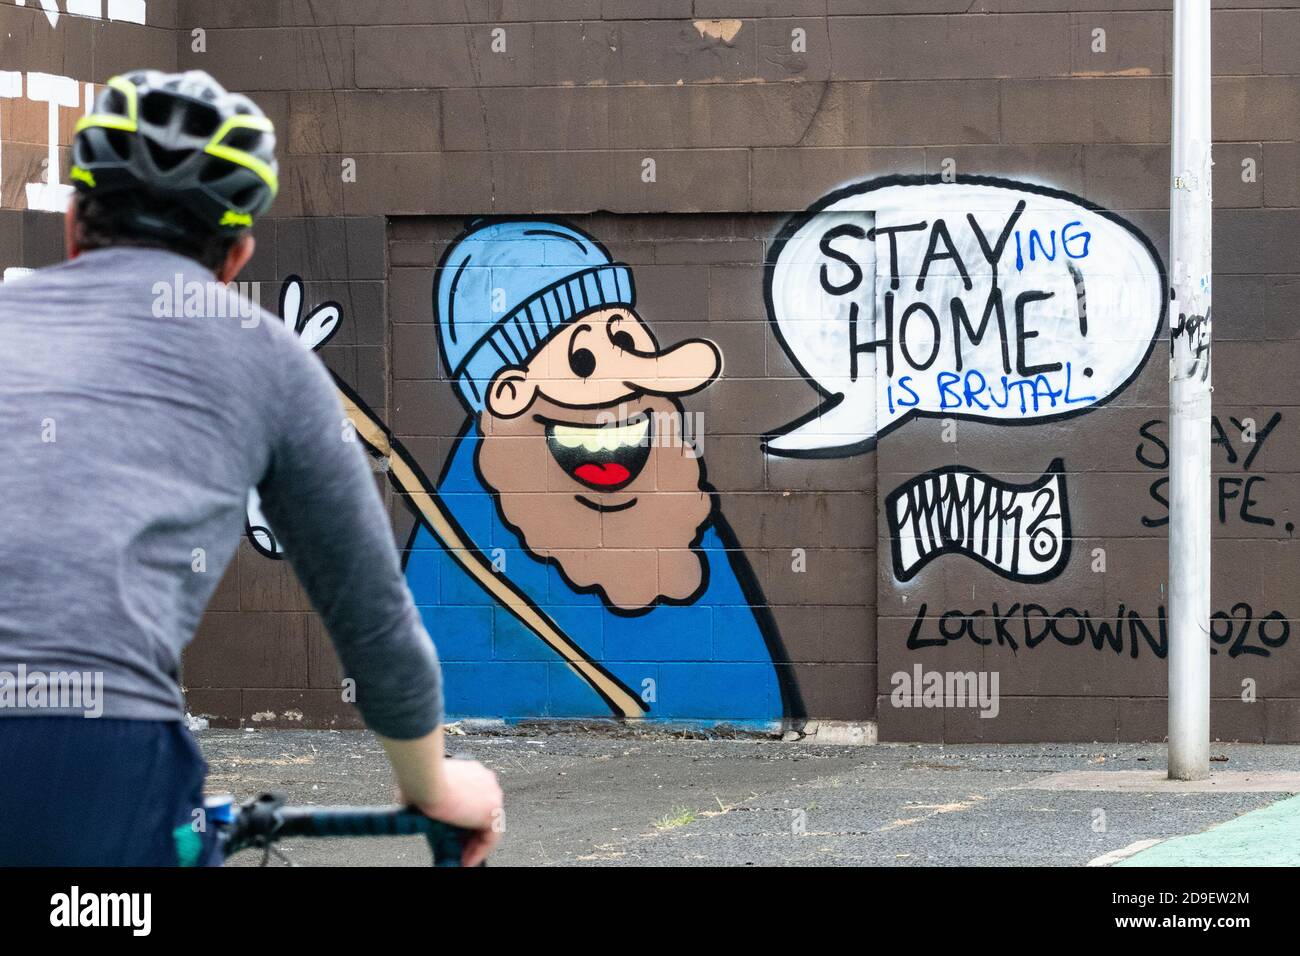 Psychische Gesundheit während des Lockdown - Stay Home Coronavirus Graffiti in Glasgow geändert zu "zu Hause zu bleiben ist brutal" Glasgow, Schottland, Großbritannien Juni 2020 Stockfoto